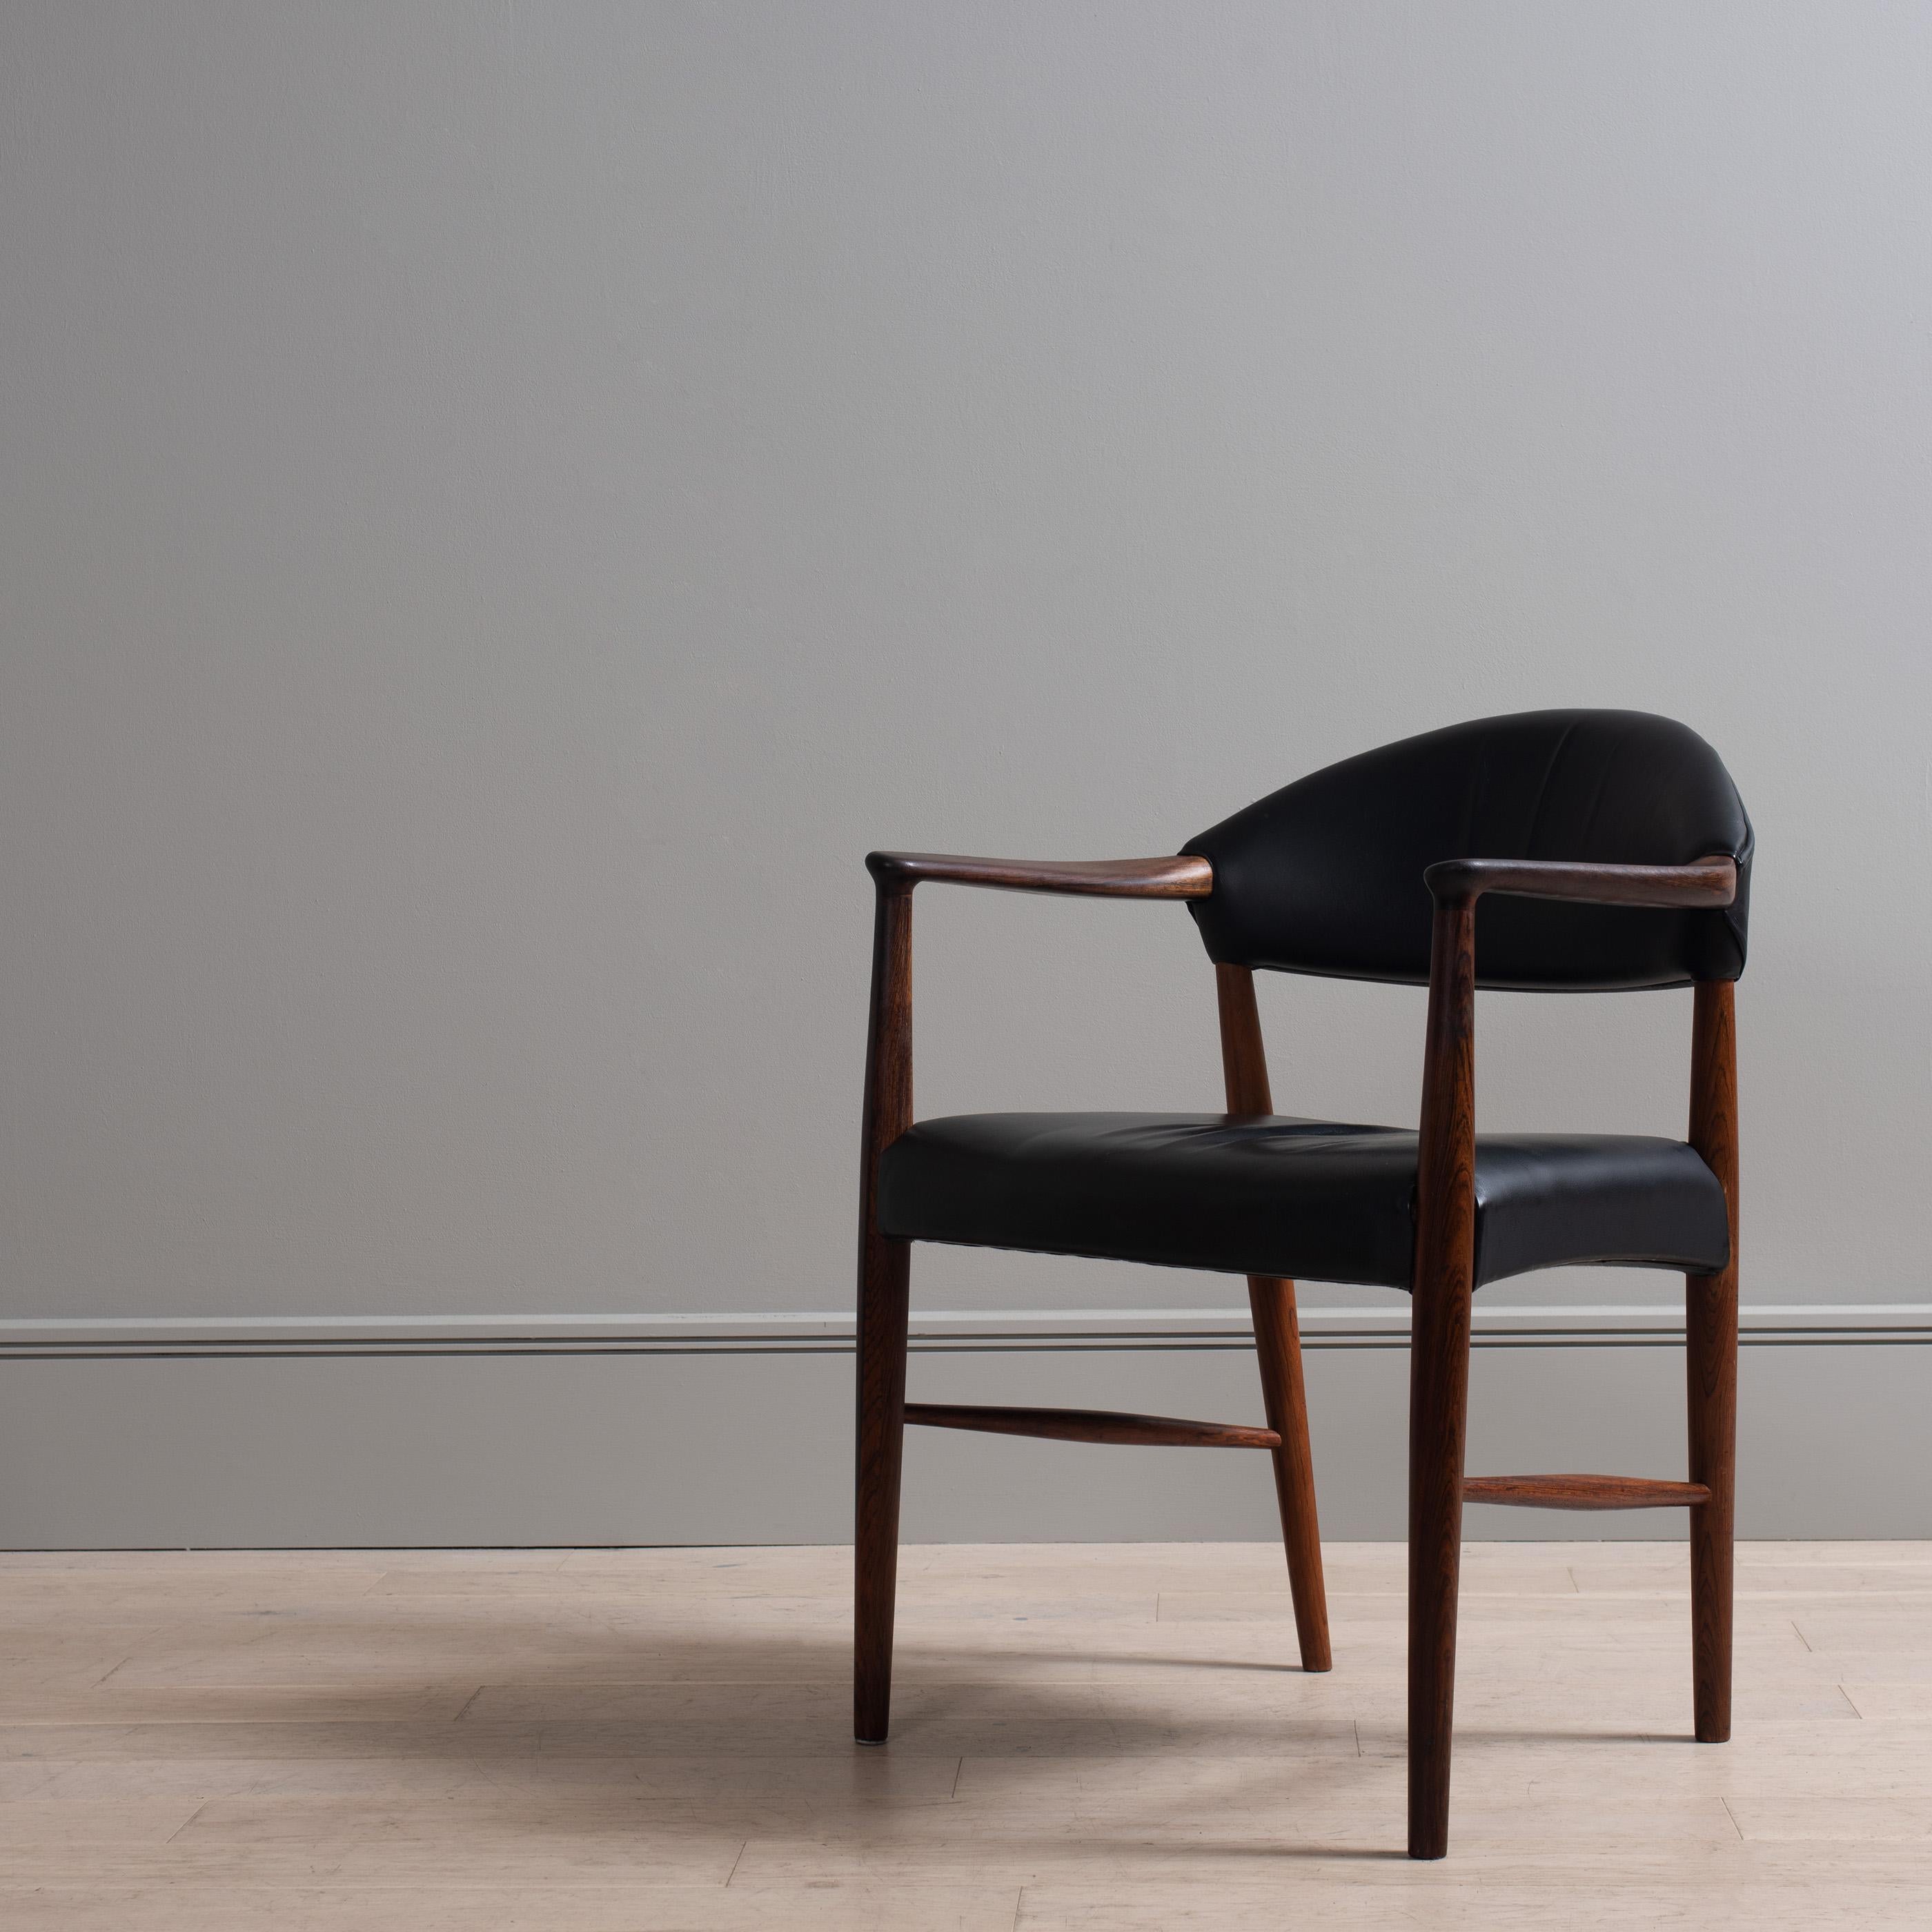  Kurt Olsen Leather Chair 3